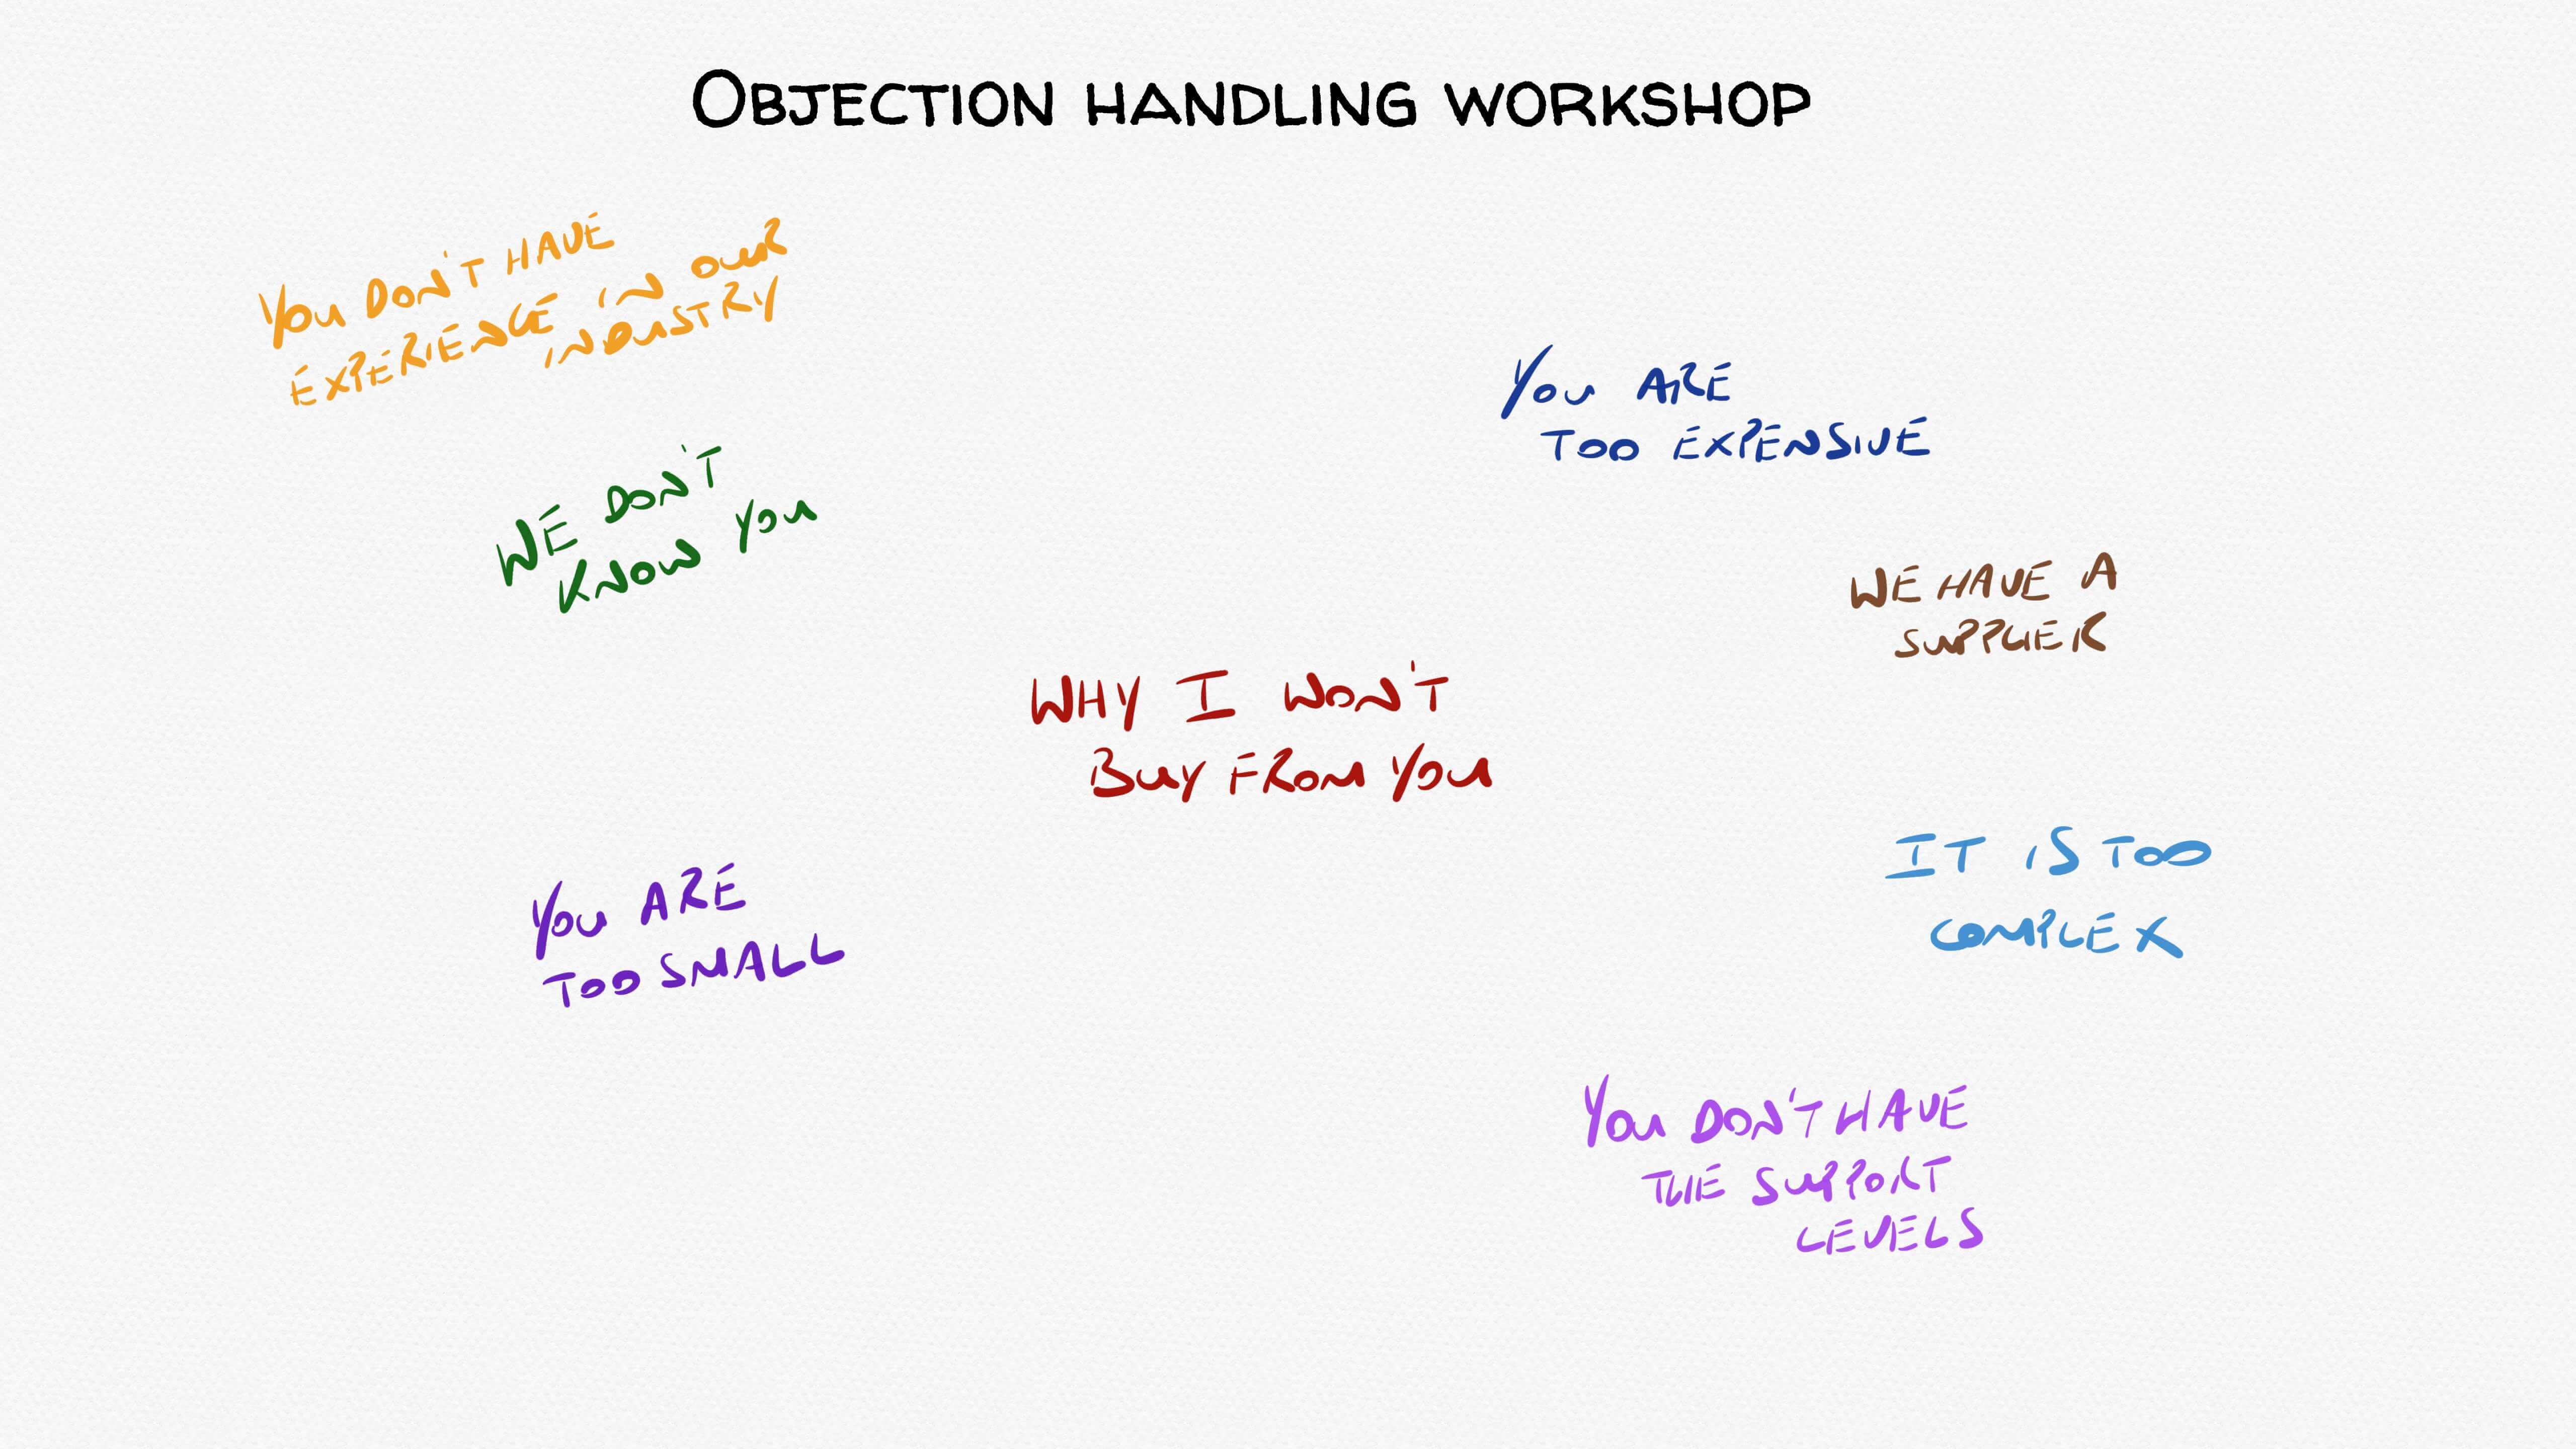 Objection handling workshop whiteboard